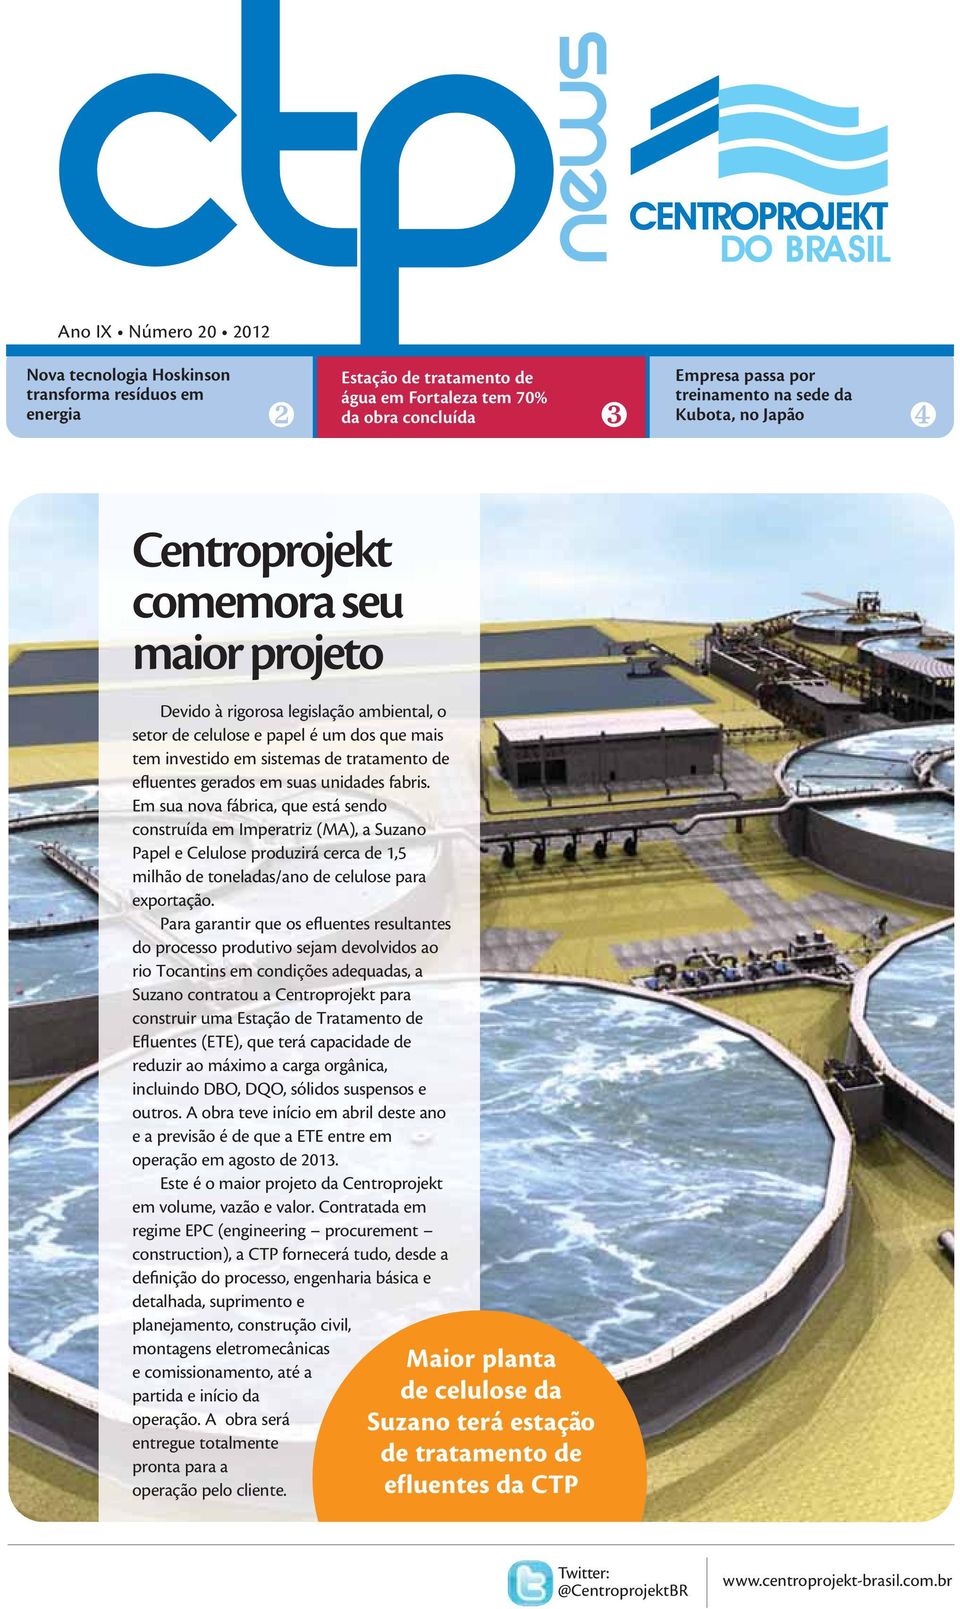 suas unidades fabris. Em sua nova fábrica, que está sendo construída em Imperatriz (MA), a Suzano Papel e Celulose produzirá cerca de 1,5 milhão de toneladas/ano de celulose para exportação.